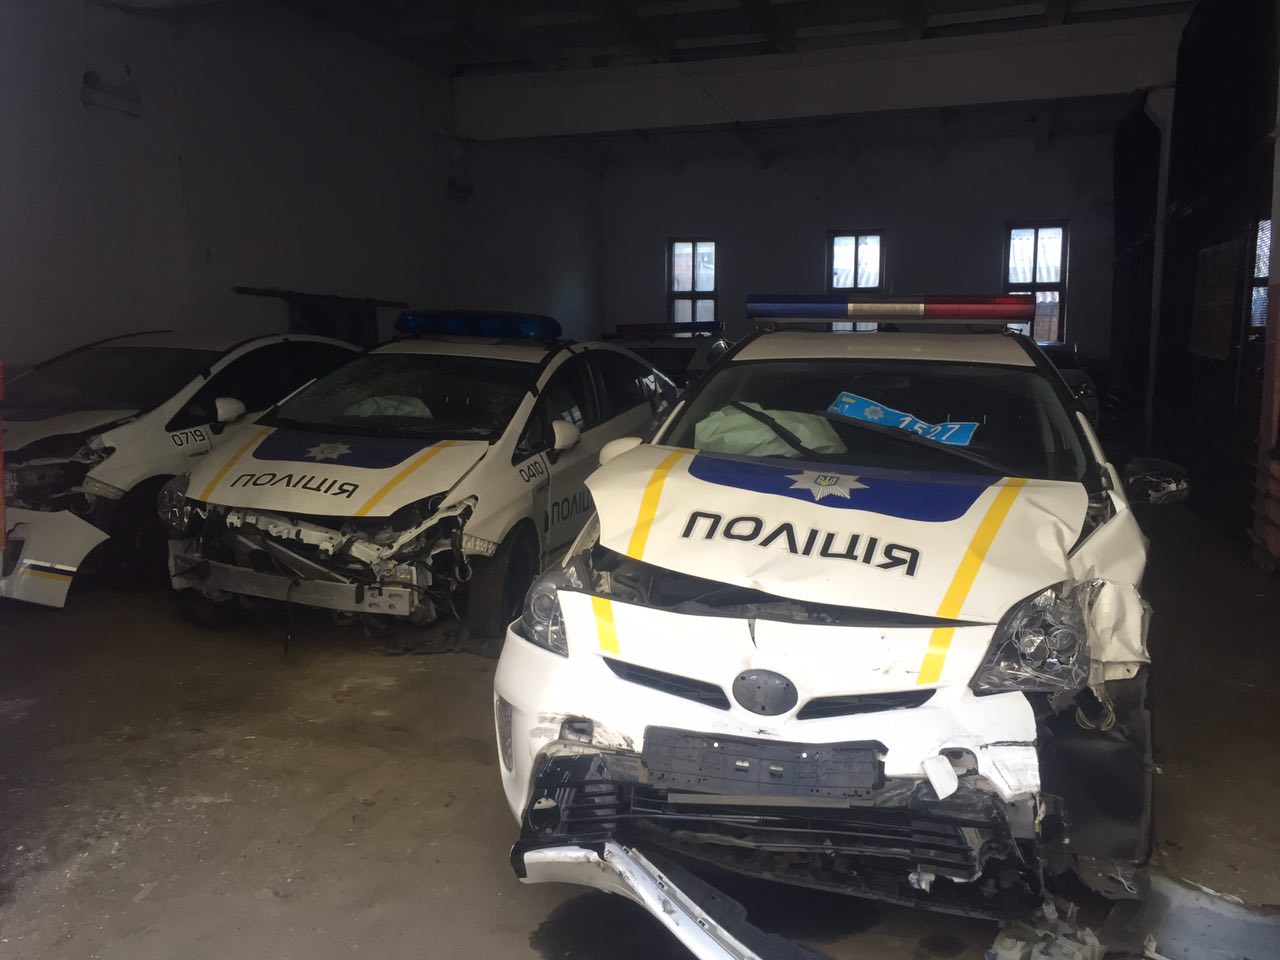 Разбитые полицейские машины. Приус Украина полиция разбитые. Тойота Приус ДПС. Разбитые автомобили украинской полиции. Разбитые машины ДПС В Украине.